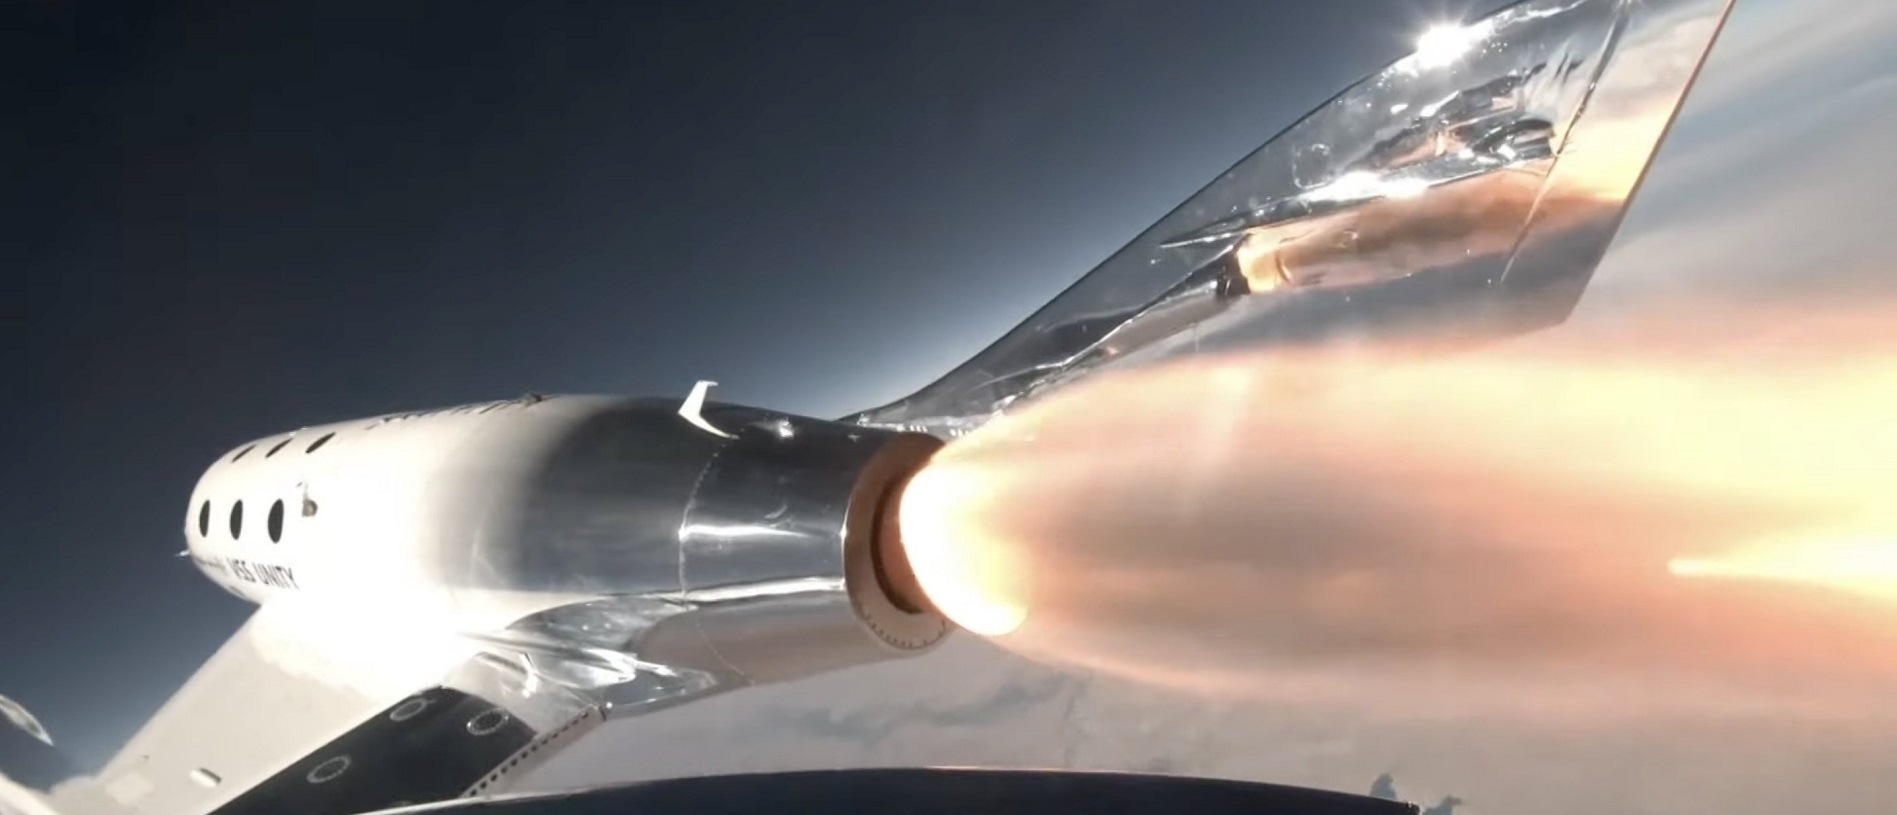 Virgin Galactic VSS Eve lights up rocket motor